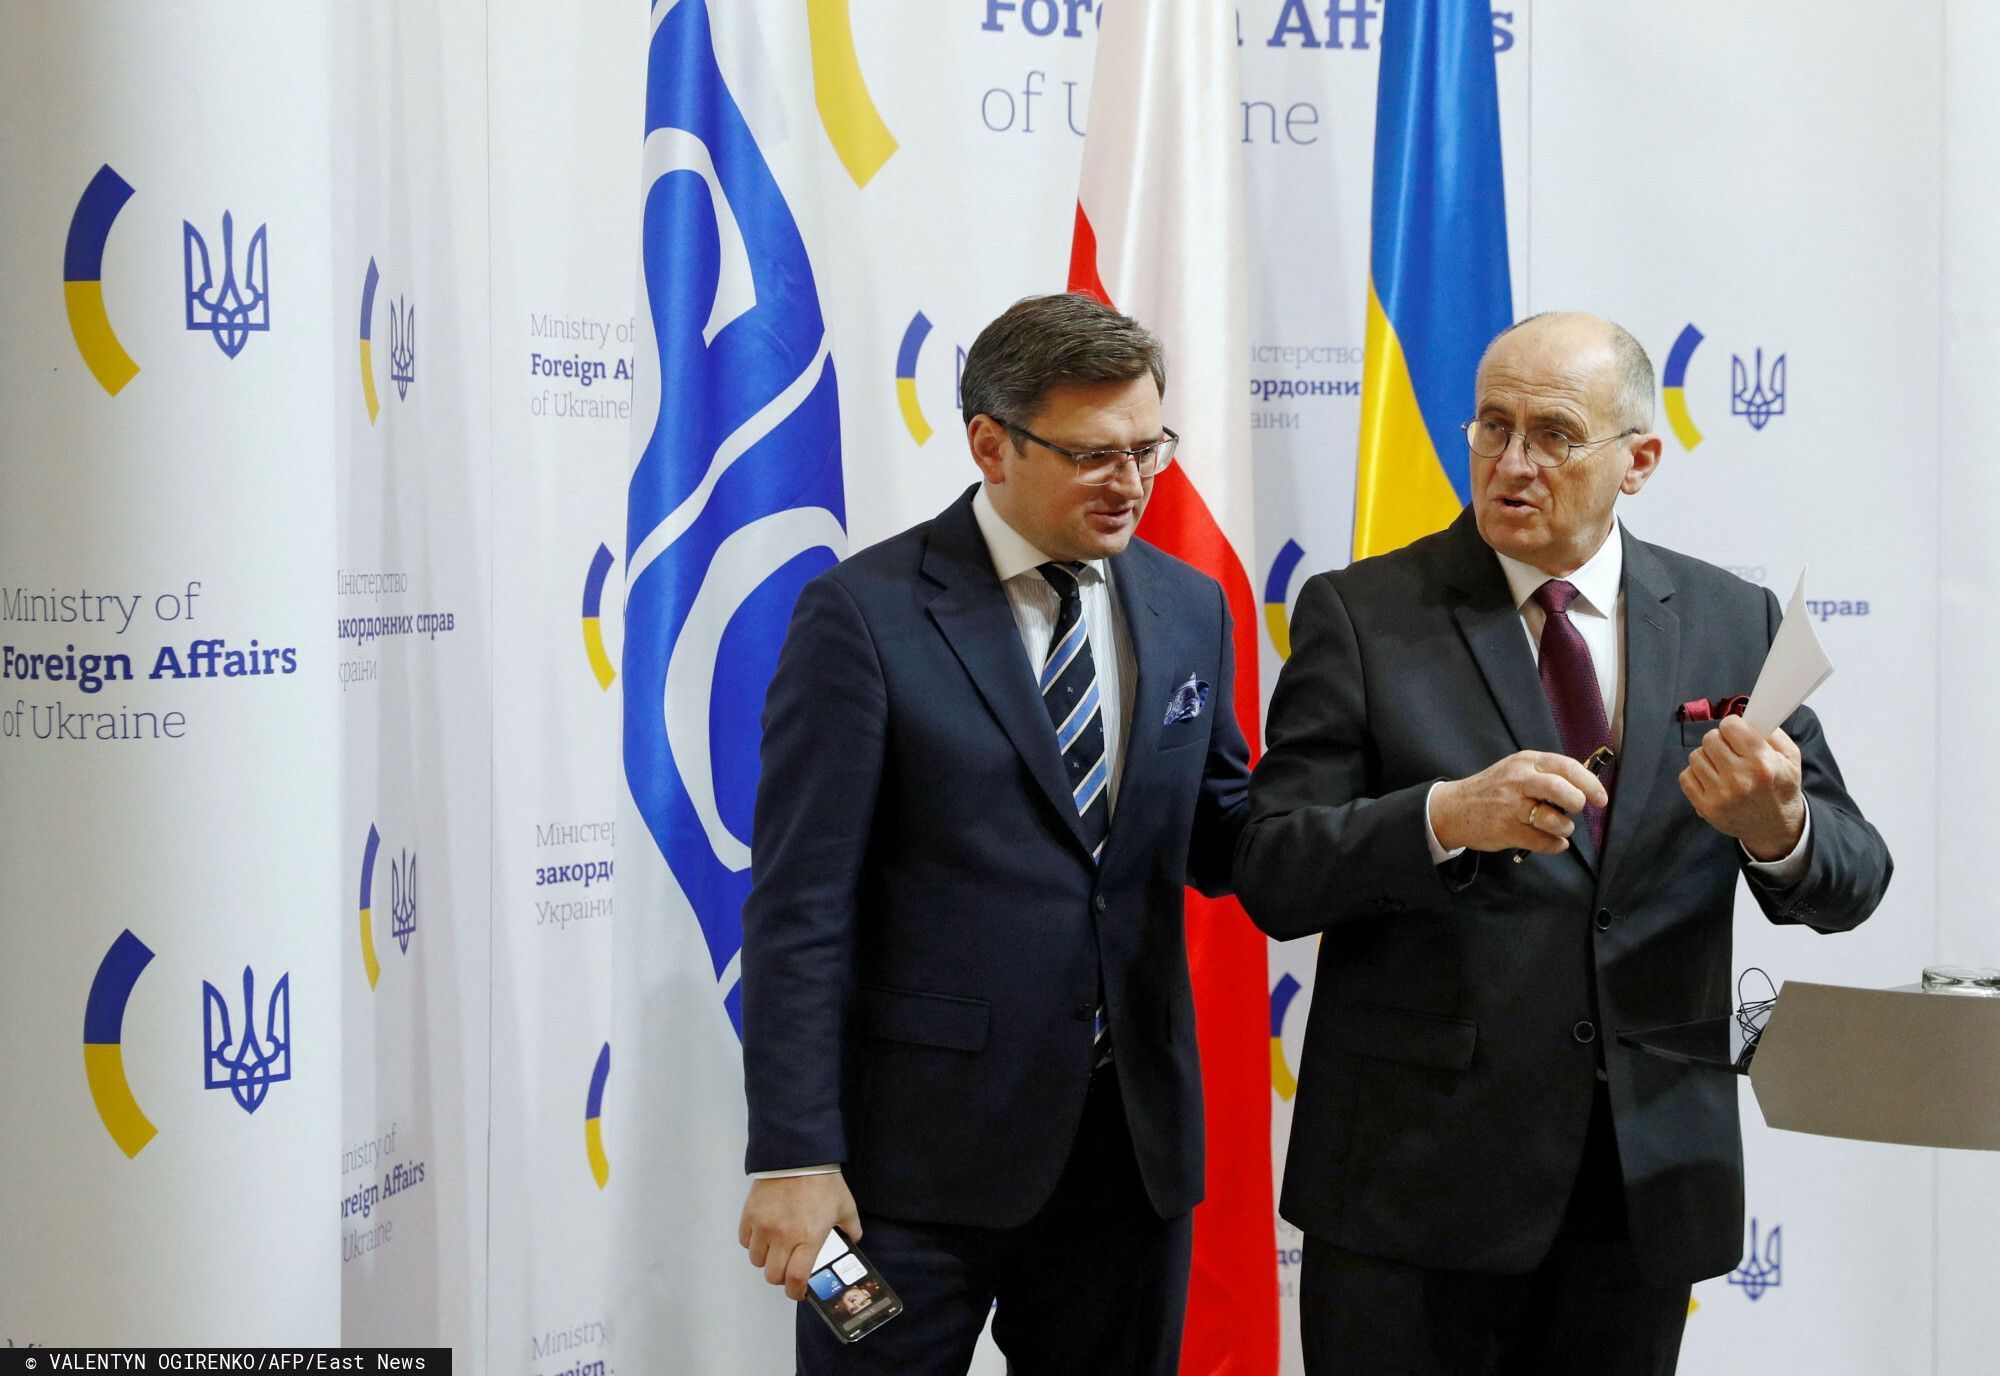 Ukraiński minister spotkał się z Andrzejem Dudą